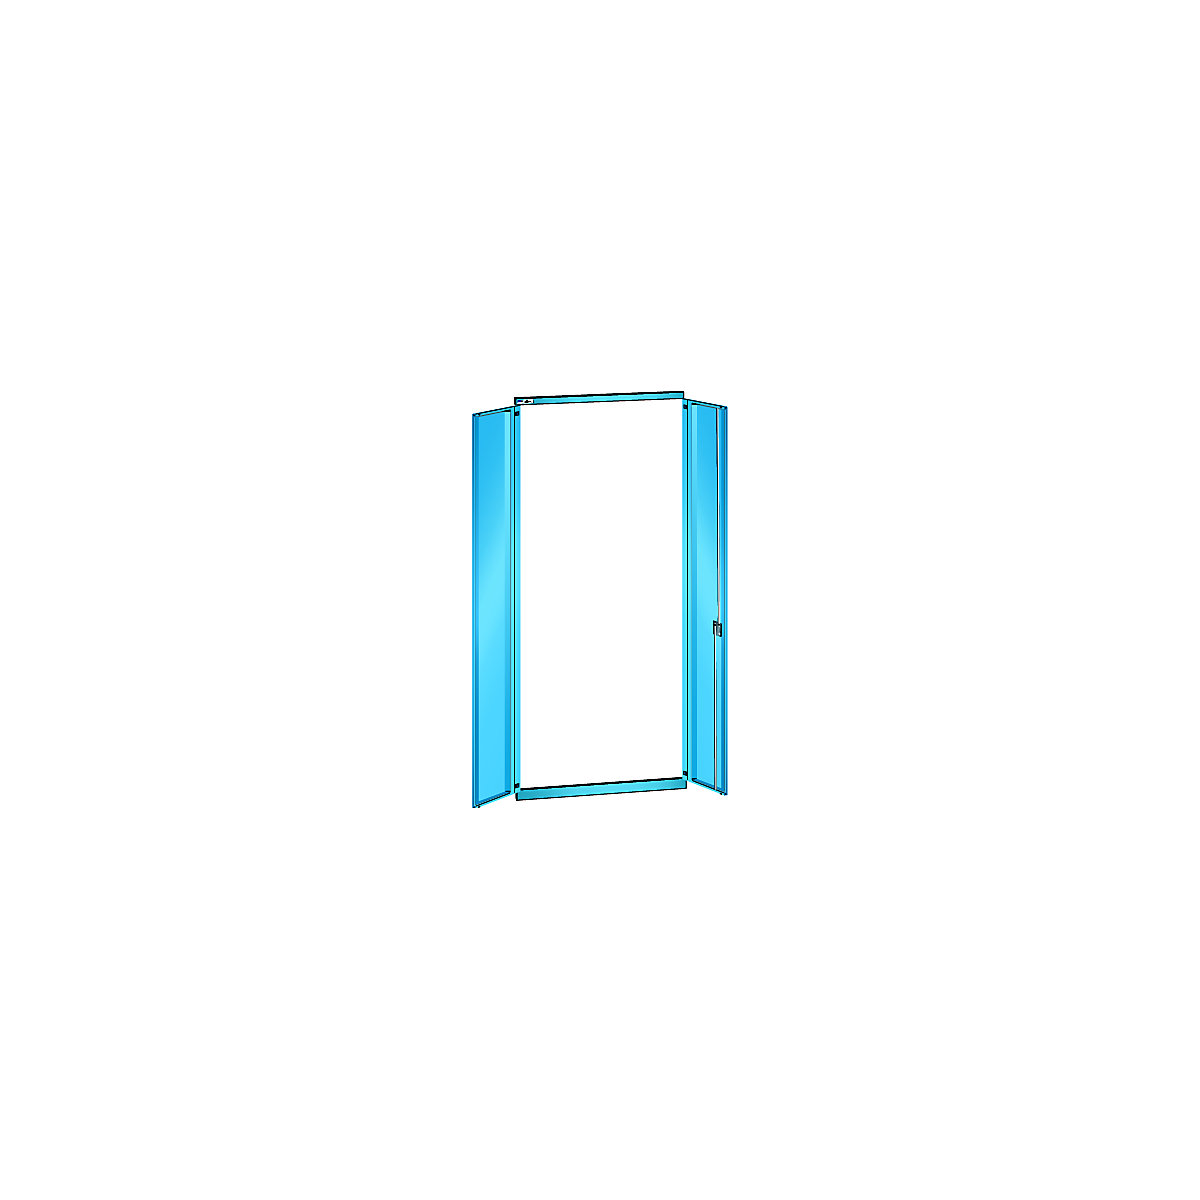 Porta de batente, chapa de aço – LISTA, para largura da prateleira de 1000 mm, altura 2500 mm, estante adicional, azul claro